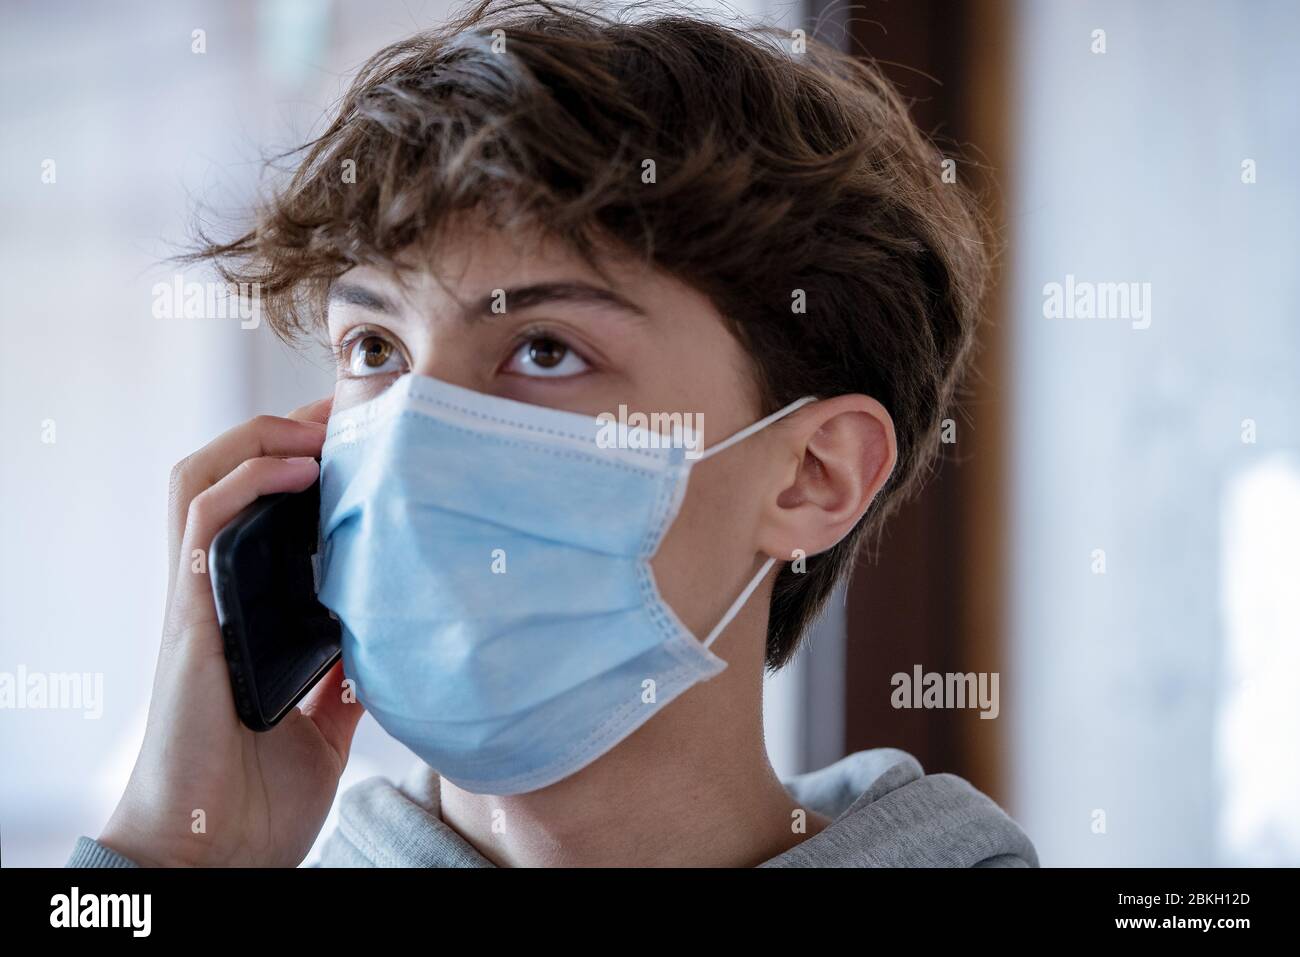 Nahaufnahme eines Teenagerjungen mit medizinischer Maske, die während des Lockdown auf dem Smartphone spricht Stockfoto